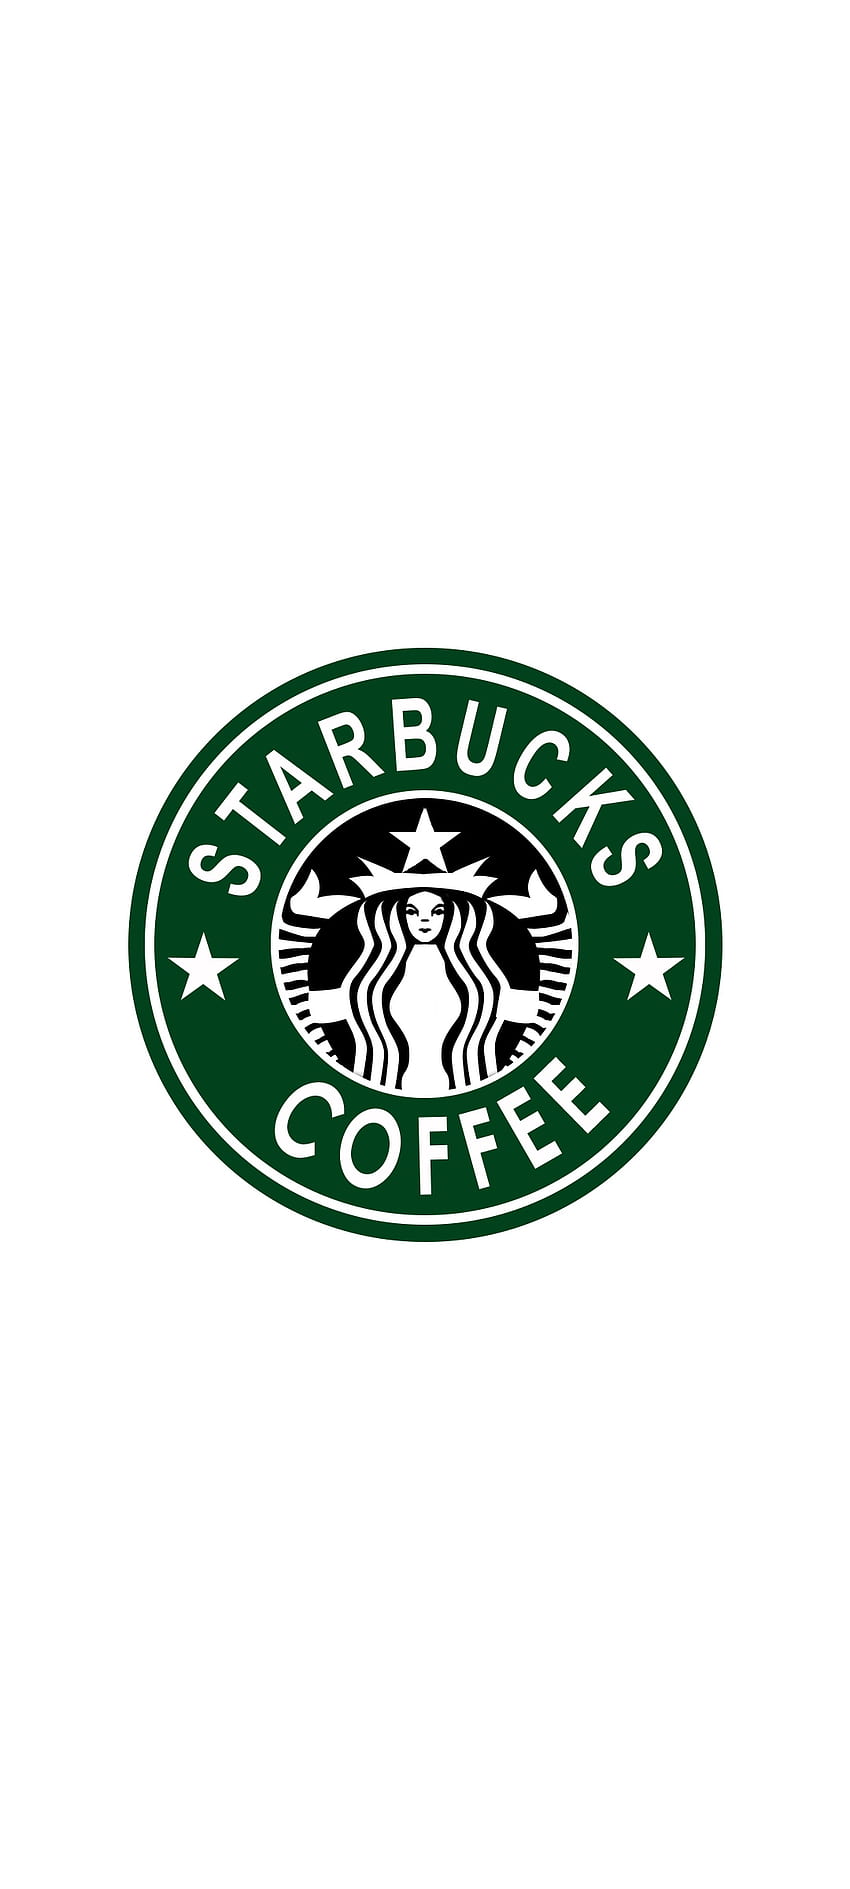 Coffee Shop - Starbucks Wallpaper (25055174) - Fanpop